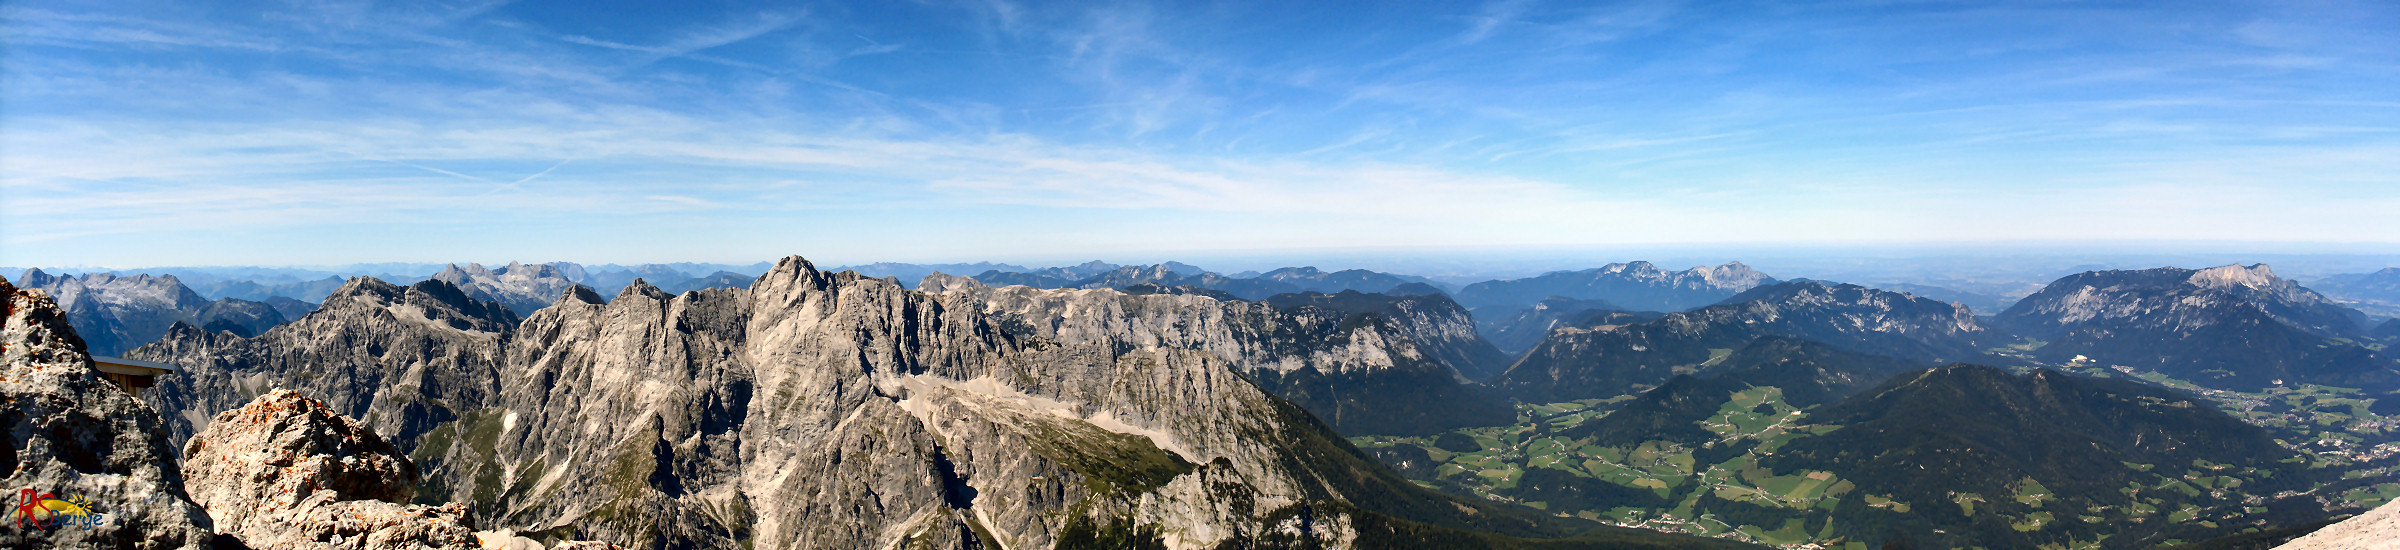 Wanderung Watzmann in den Berchtesgadener Alpen: Panorama 2 am Hocheck